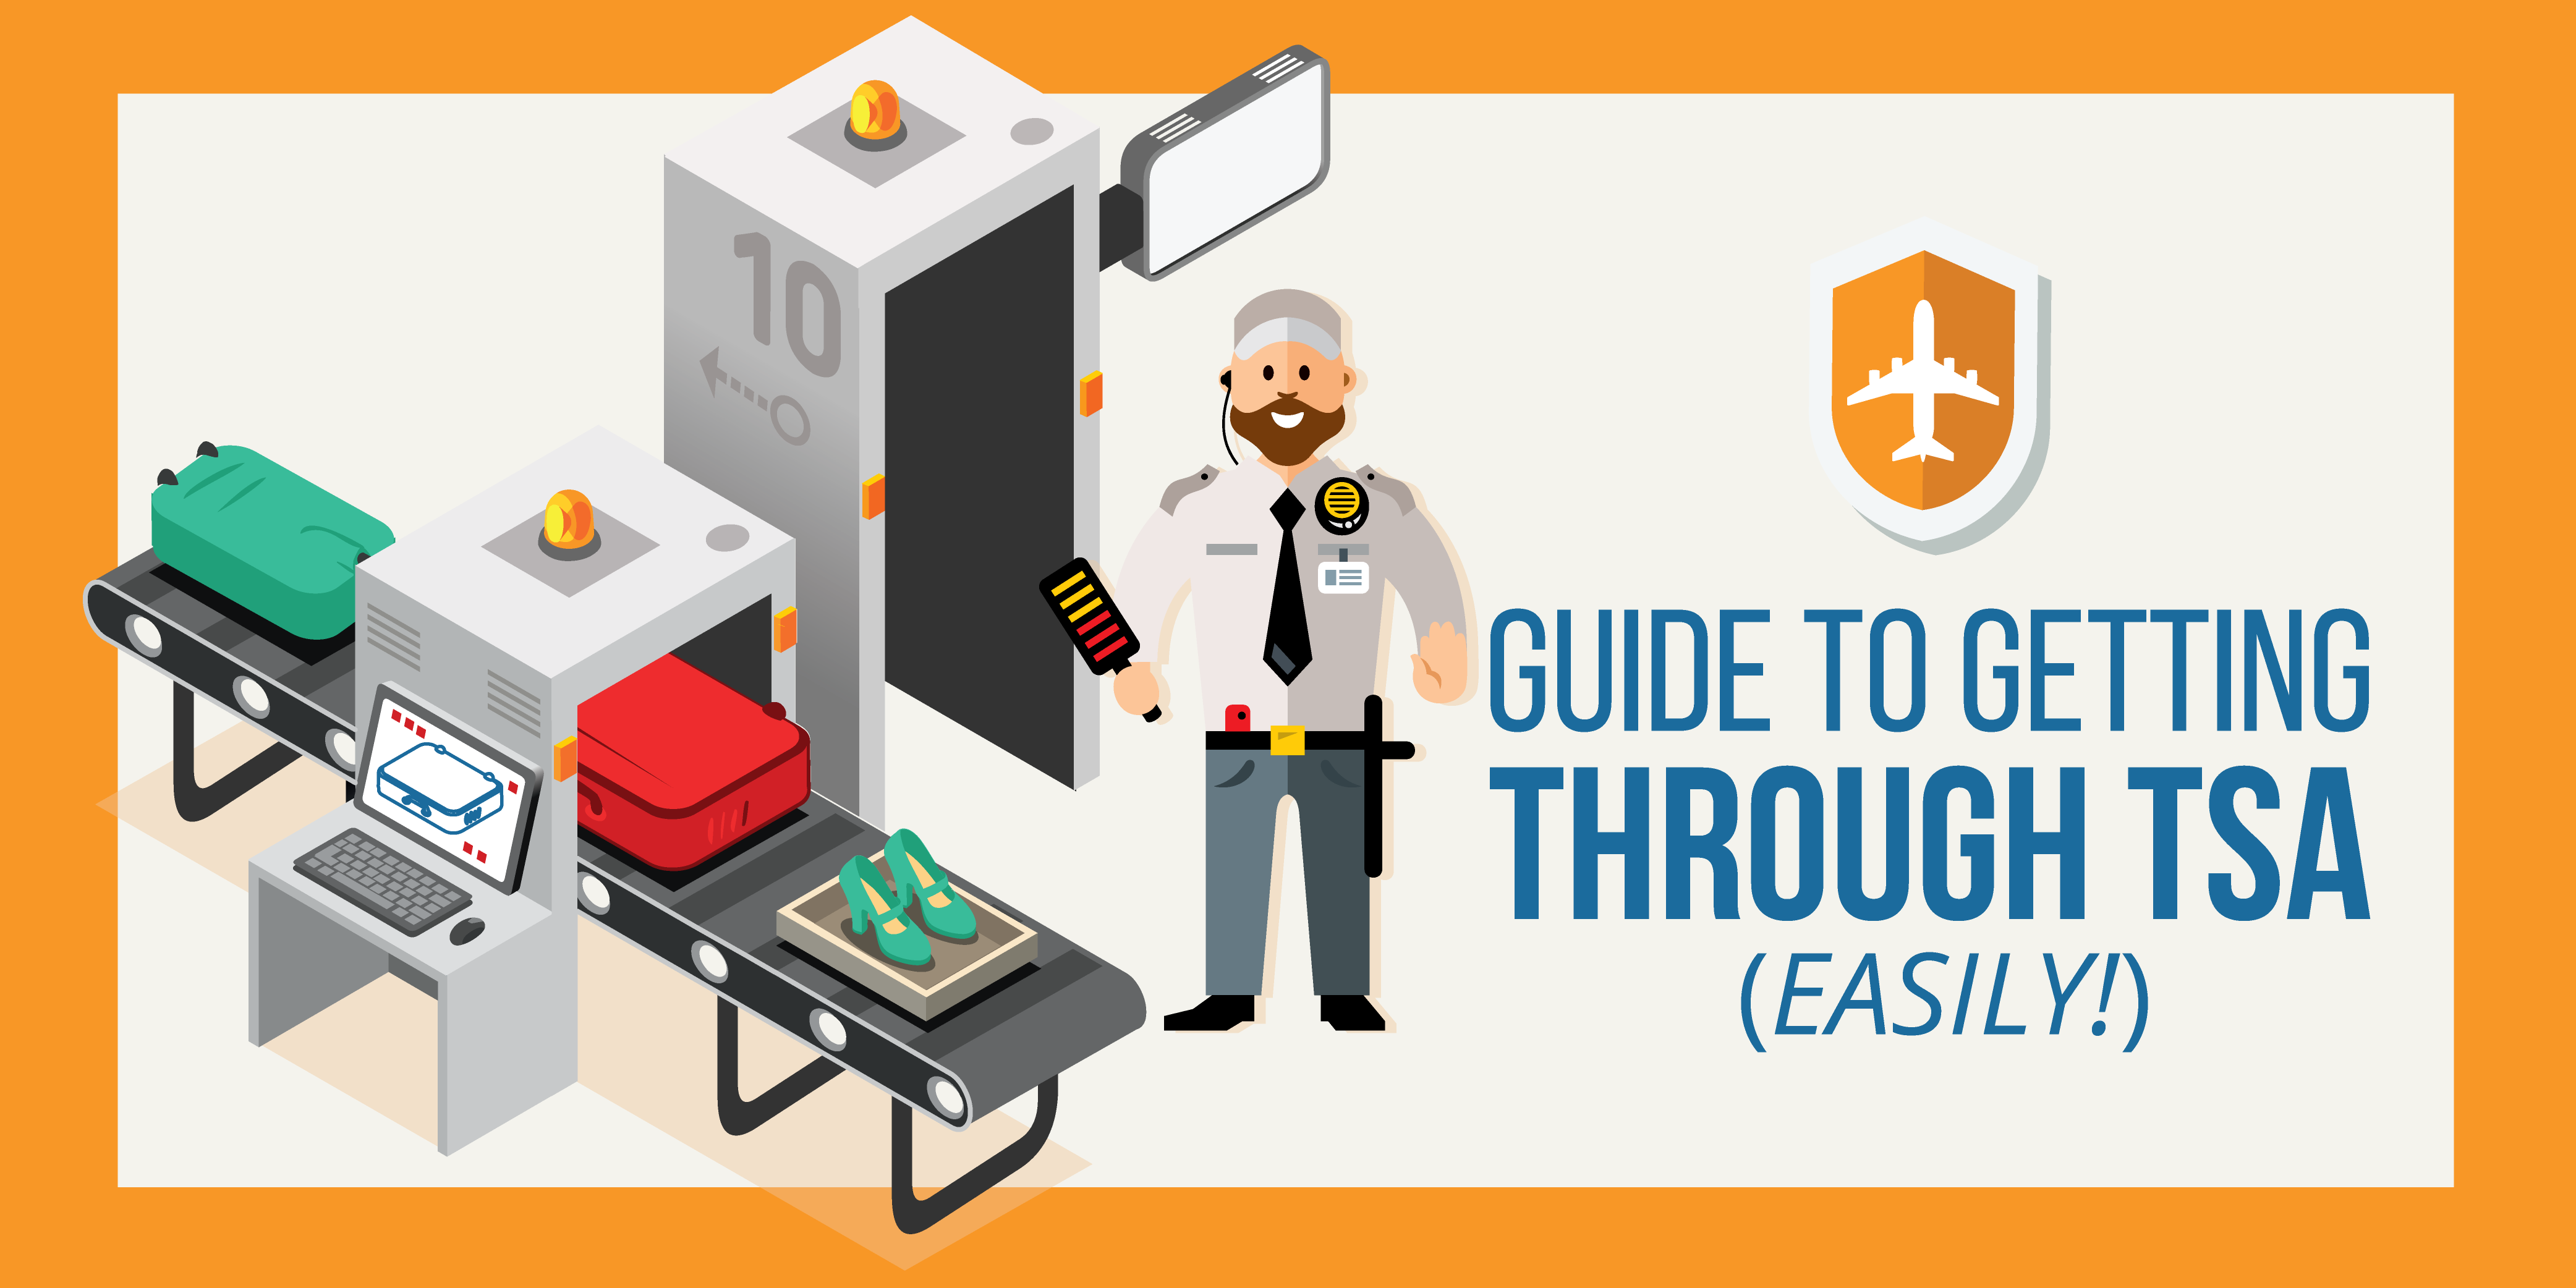 How To Get Through TSA Easily